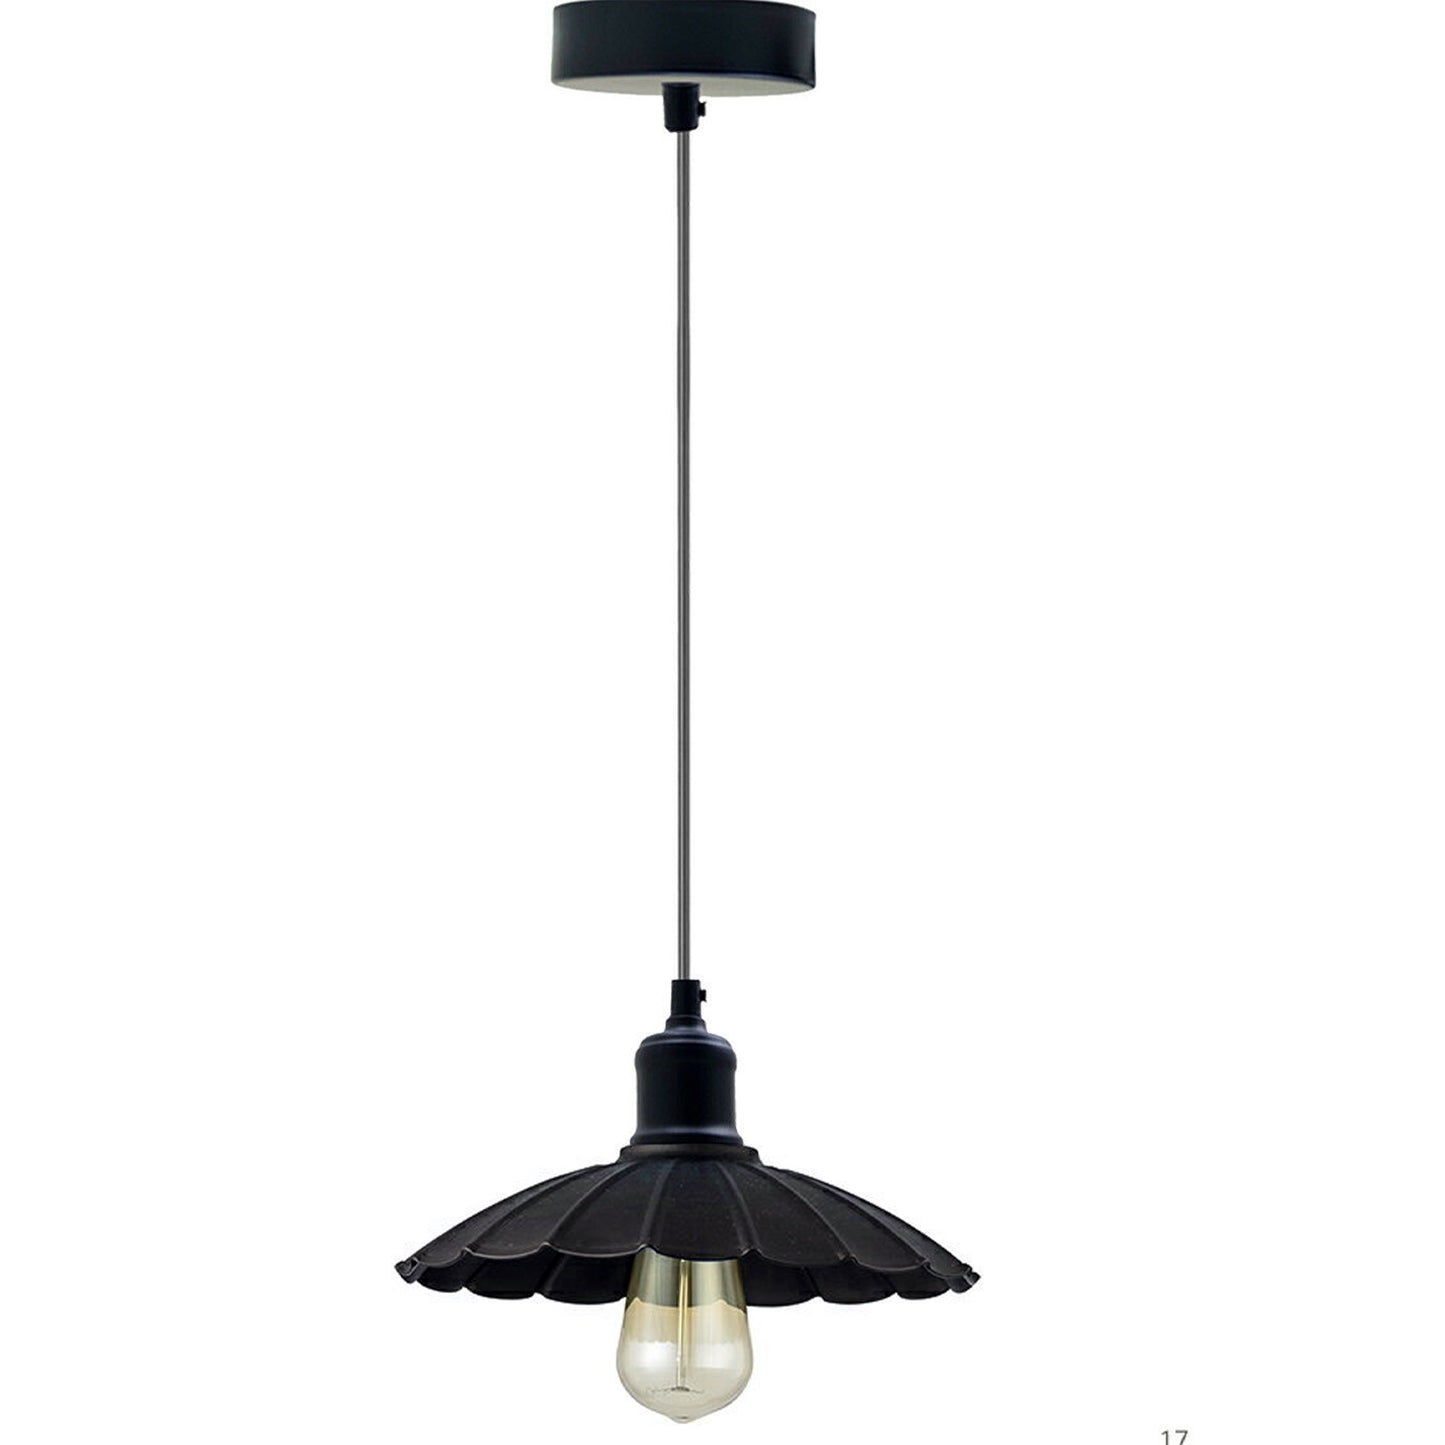 Schwarz -Industriedesign Küchenlampe E27 Hängelampe Retro Pendellampe Lampe Leuchte